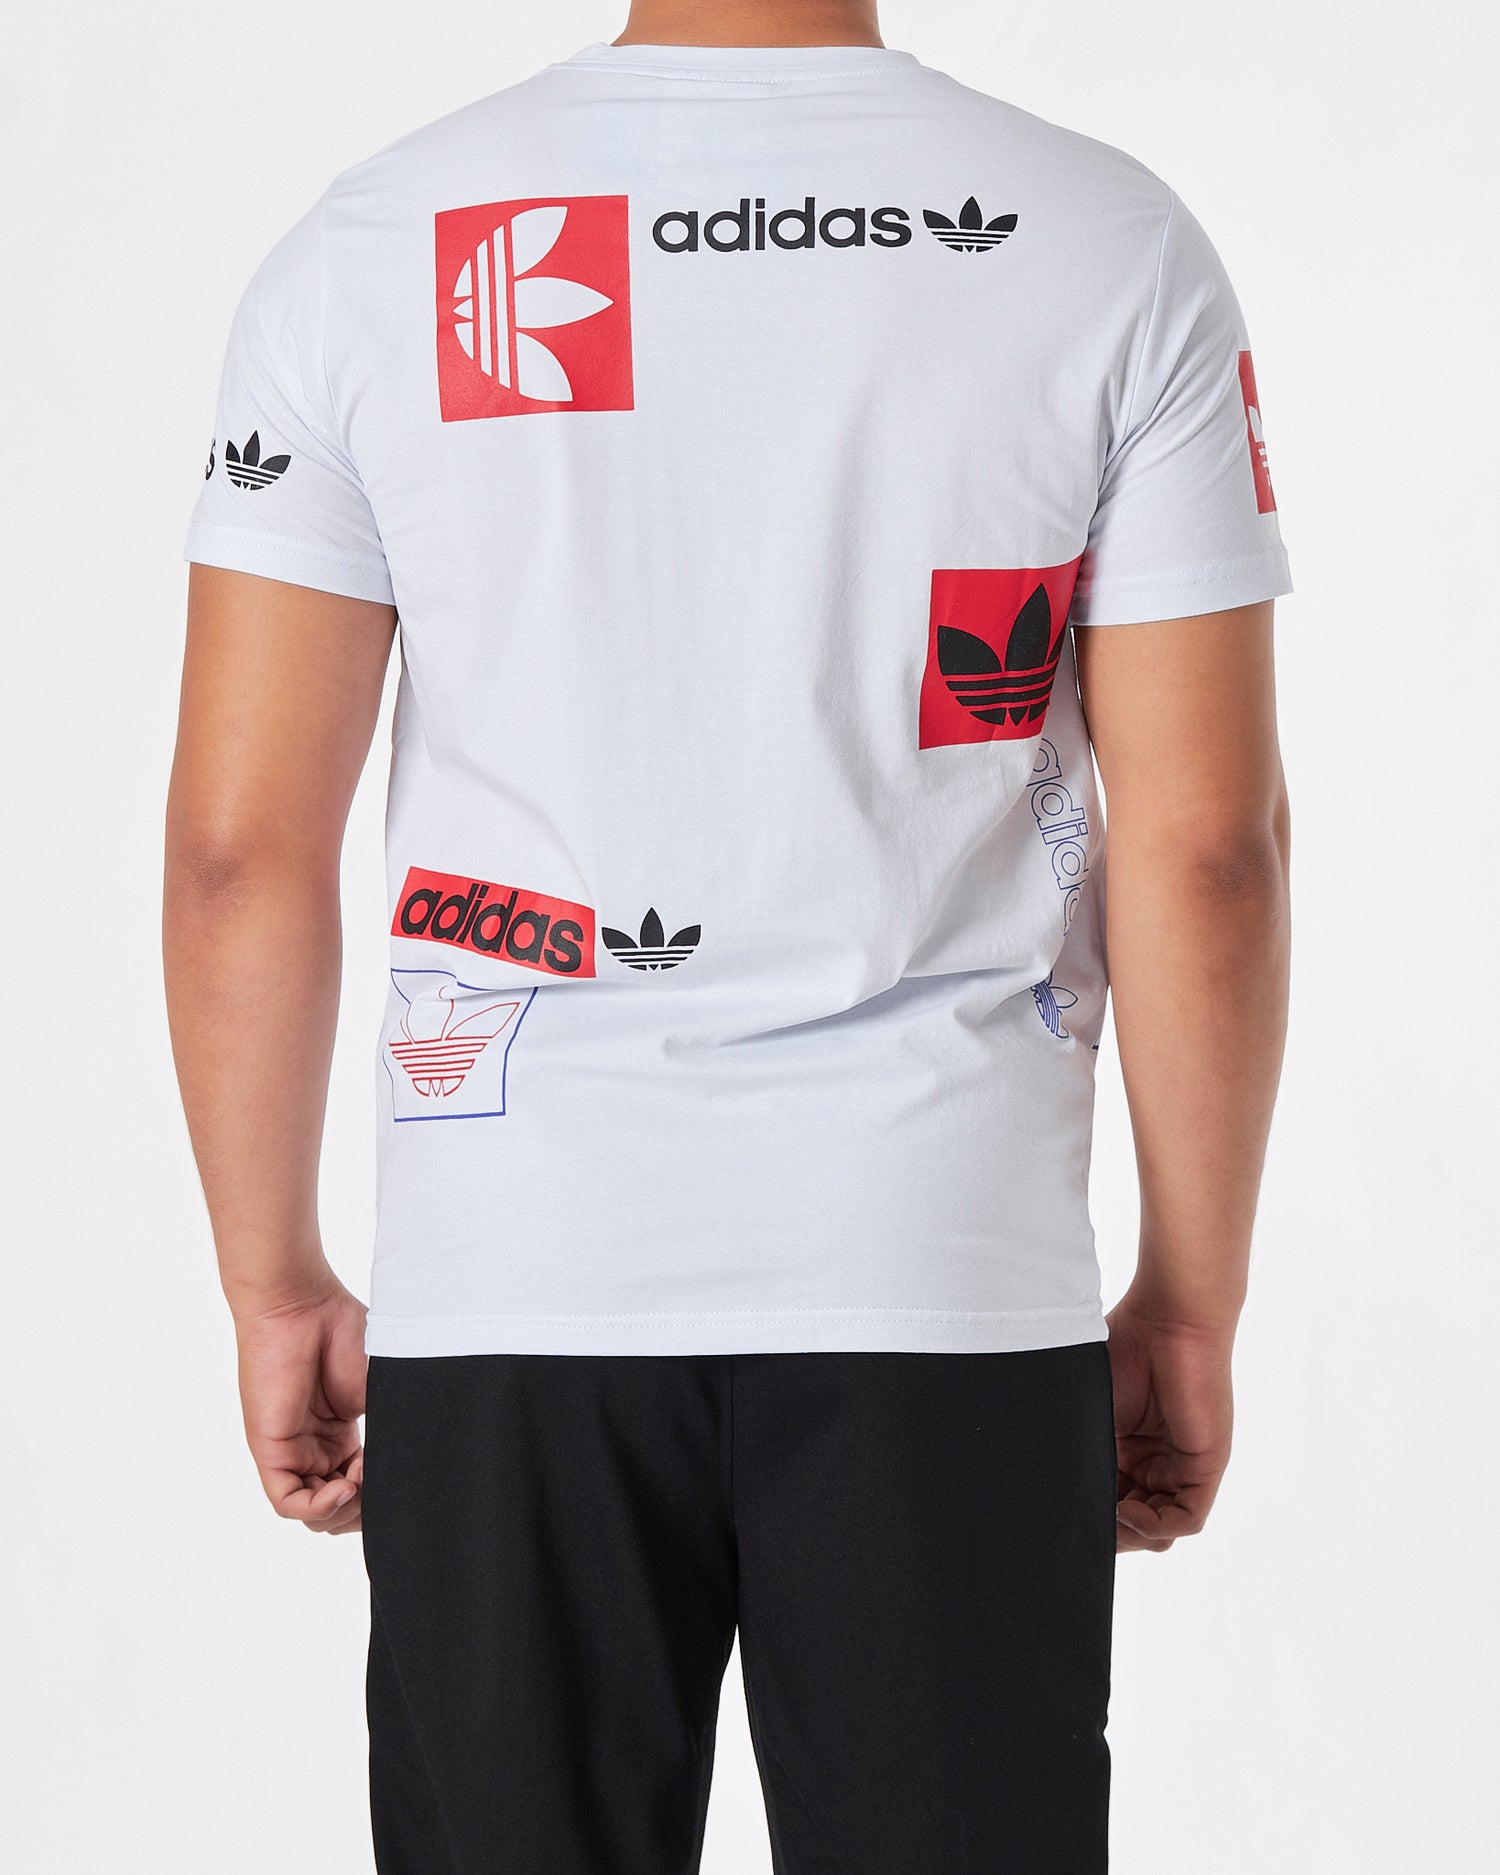 ADI Logo Over Pinted Men White T-Shirt 17.50